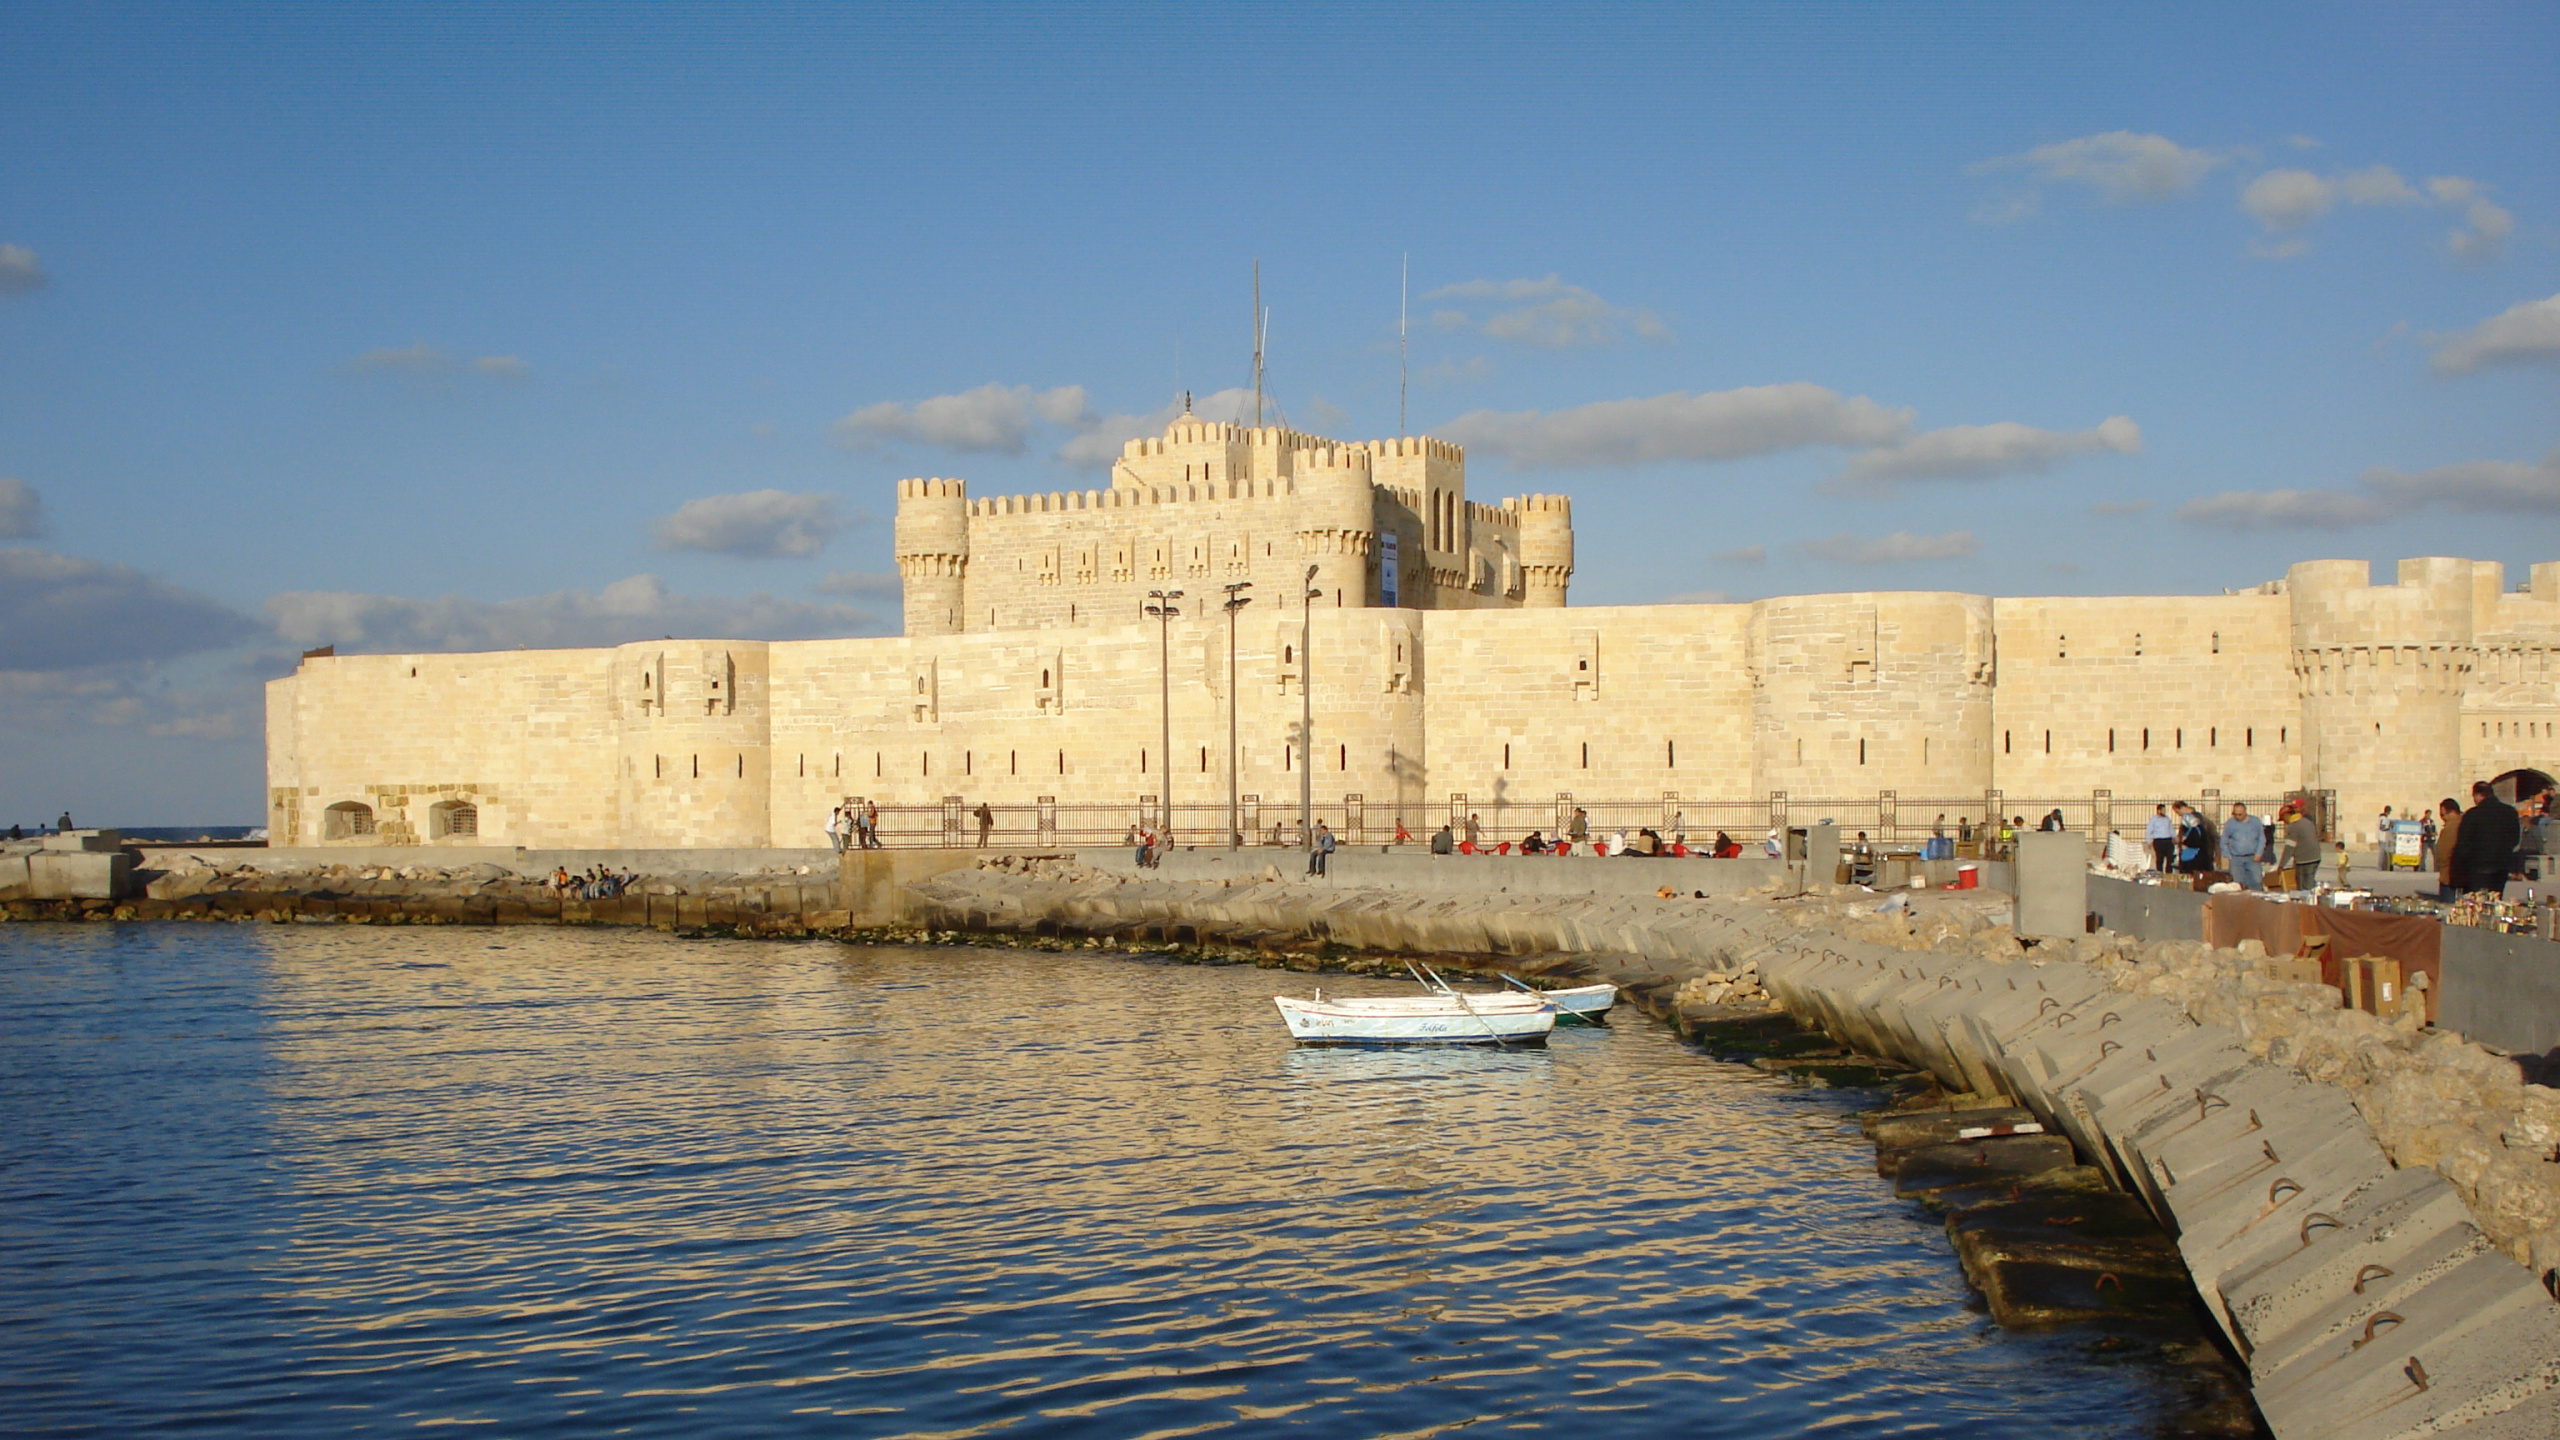 开罗, 旅游业, 城堡, 防御工事, 大海 壁纸 2560x1440 允许